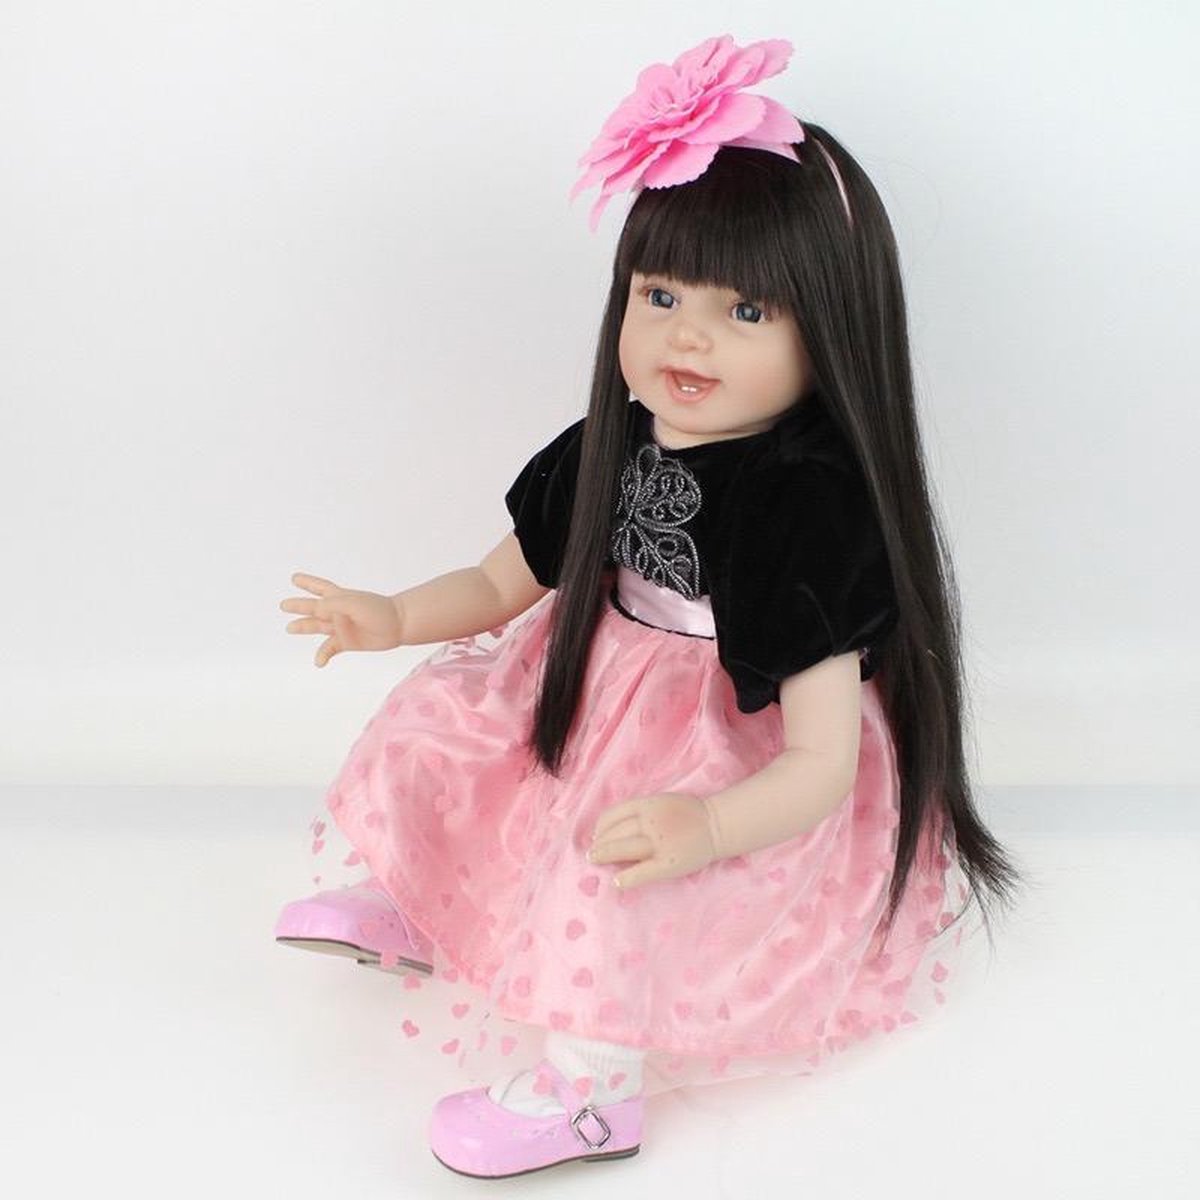 Fantasie radicaal zelf Reborn baby pop (hand gemaakt) met lang haar – Knuffelpop - Levensecht baby  55cm | bol.com